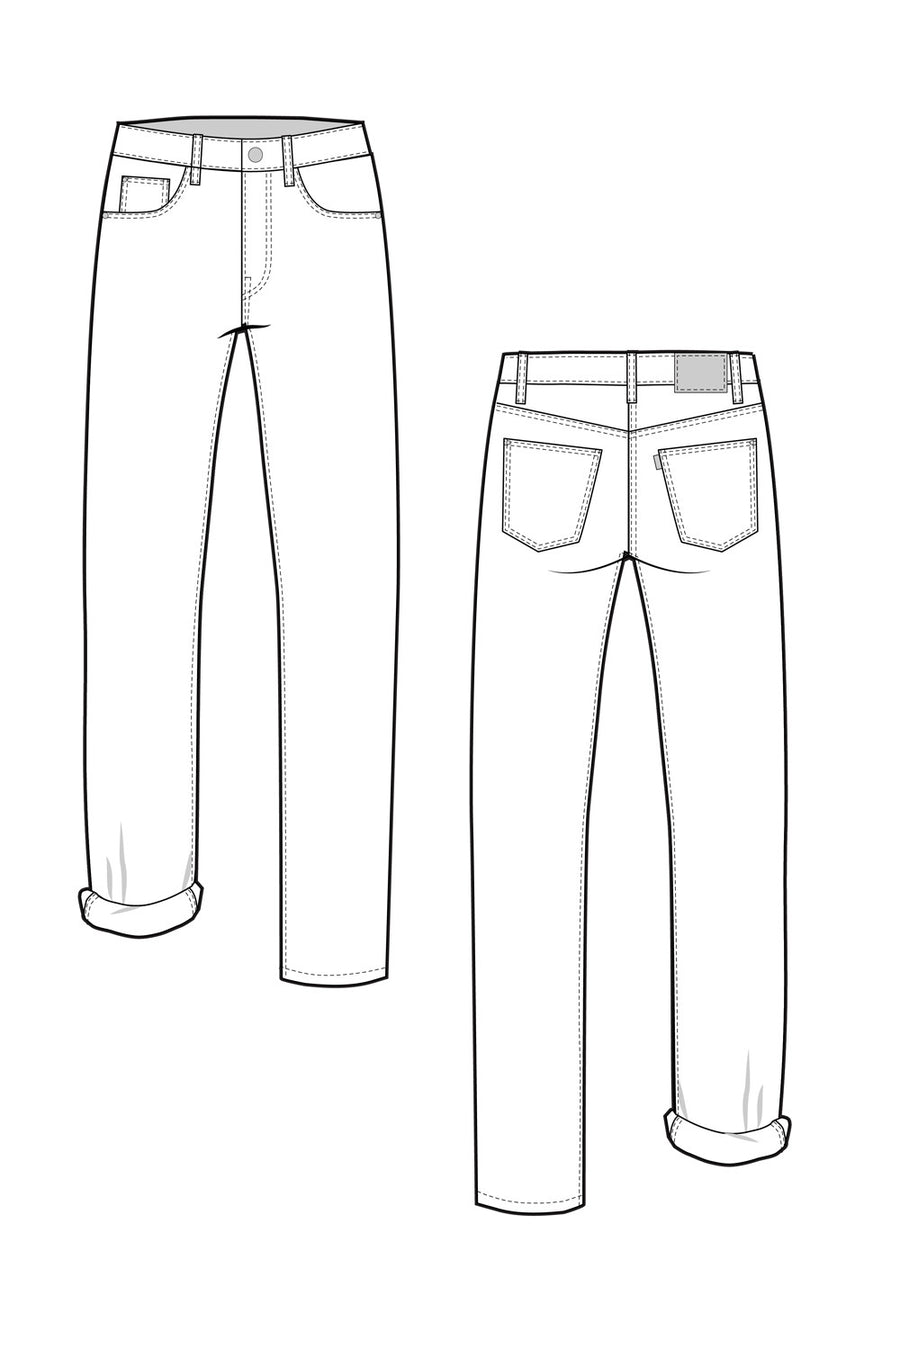 Denim Pant flat sketch design template. Men's denim long pant